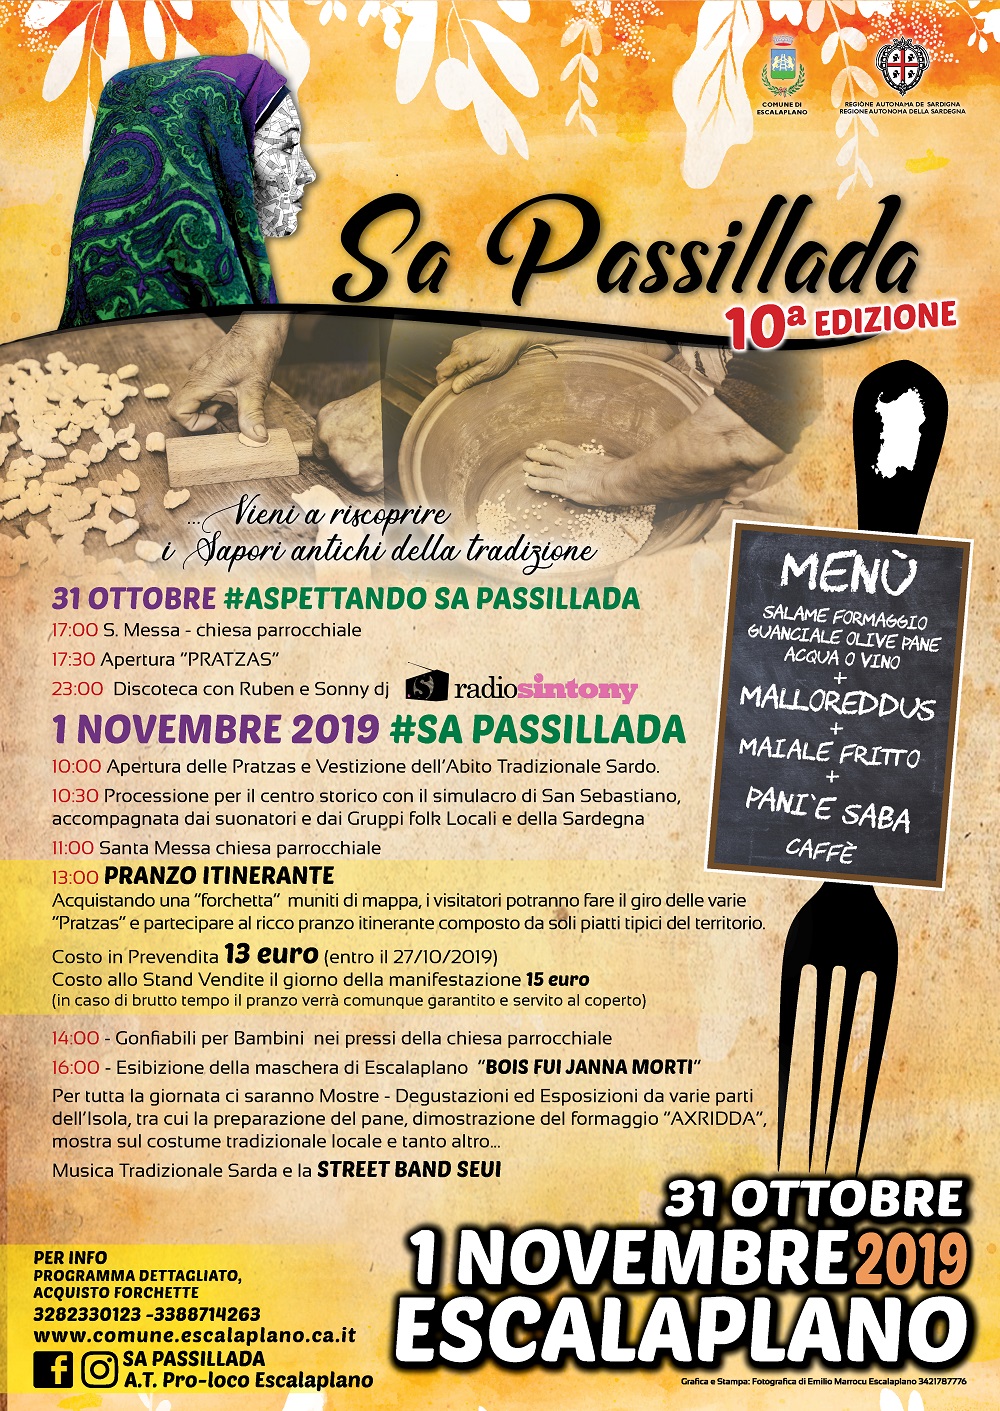 SA PASSILLADA - 10^ EDIZIONE - ESCALAPLANO 31 OTTOBRE 1° NOVEMBRE 2019